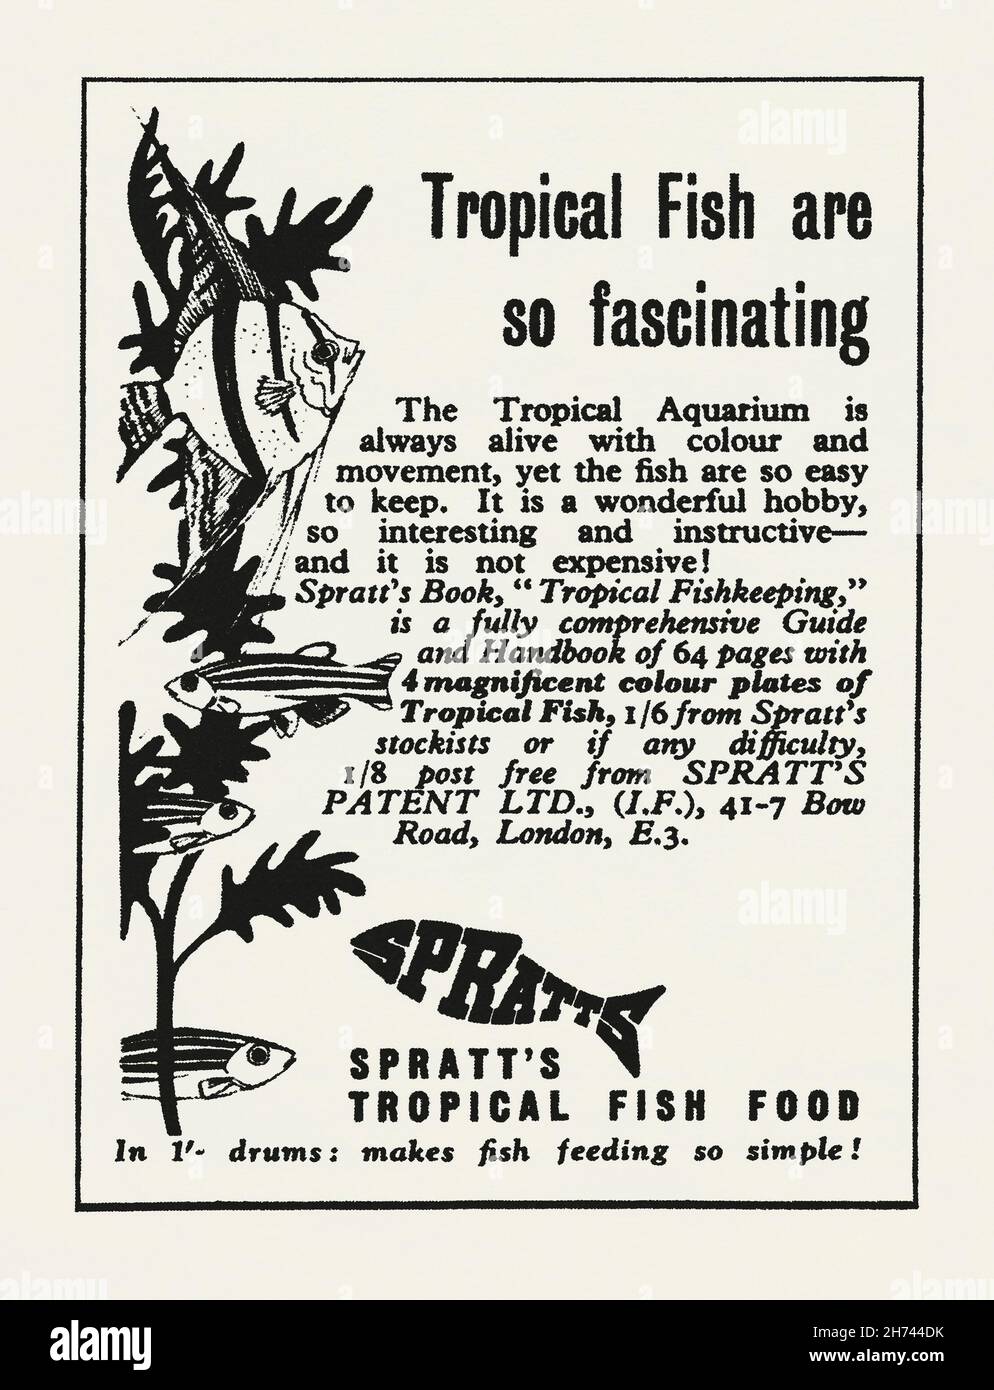 Une publicité des années 1950 pour le Tropical Fish Food de Spratt.La publicité est apparue dans un magazine publié au Royaume-Uni en mai 1953.Il favorise également un livre sur la conservation du poisson comme un passe-temps.Spratt's a été le premier fabricant mondial de biscuits pour chiens à grande échelle.Son ‘gâteau pour chien de Meat Fibrine’ était la brasse de l’entrepreneur américain James Spratt qui lança le biscuit à Londres vers 1860.La société a commencé ses activités aux États-Unis d'Amérique dans les années 1870.Il s'est étendu à toutes sortes de produits pour animaux de compagnie et de bétail – des graphiques vintage des années 1950 à usage éditorial. Banque D'Images